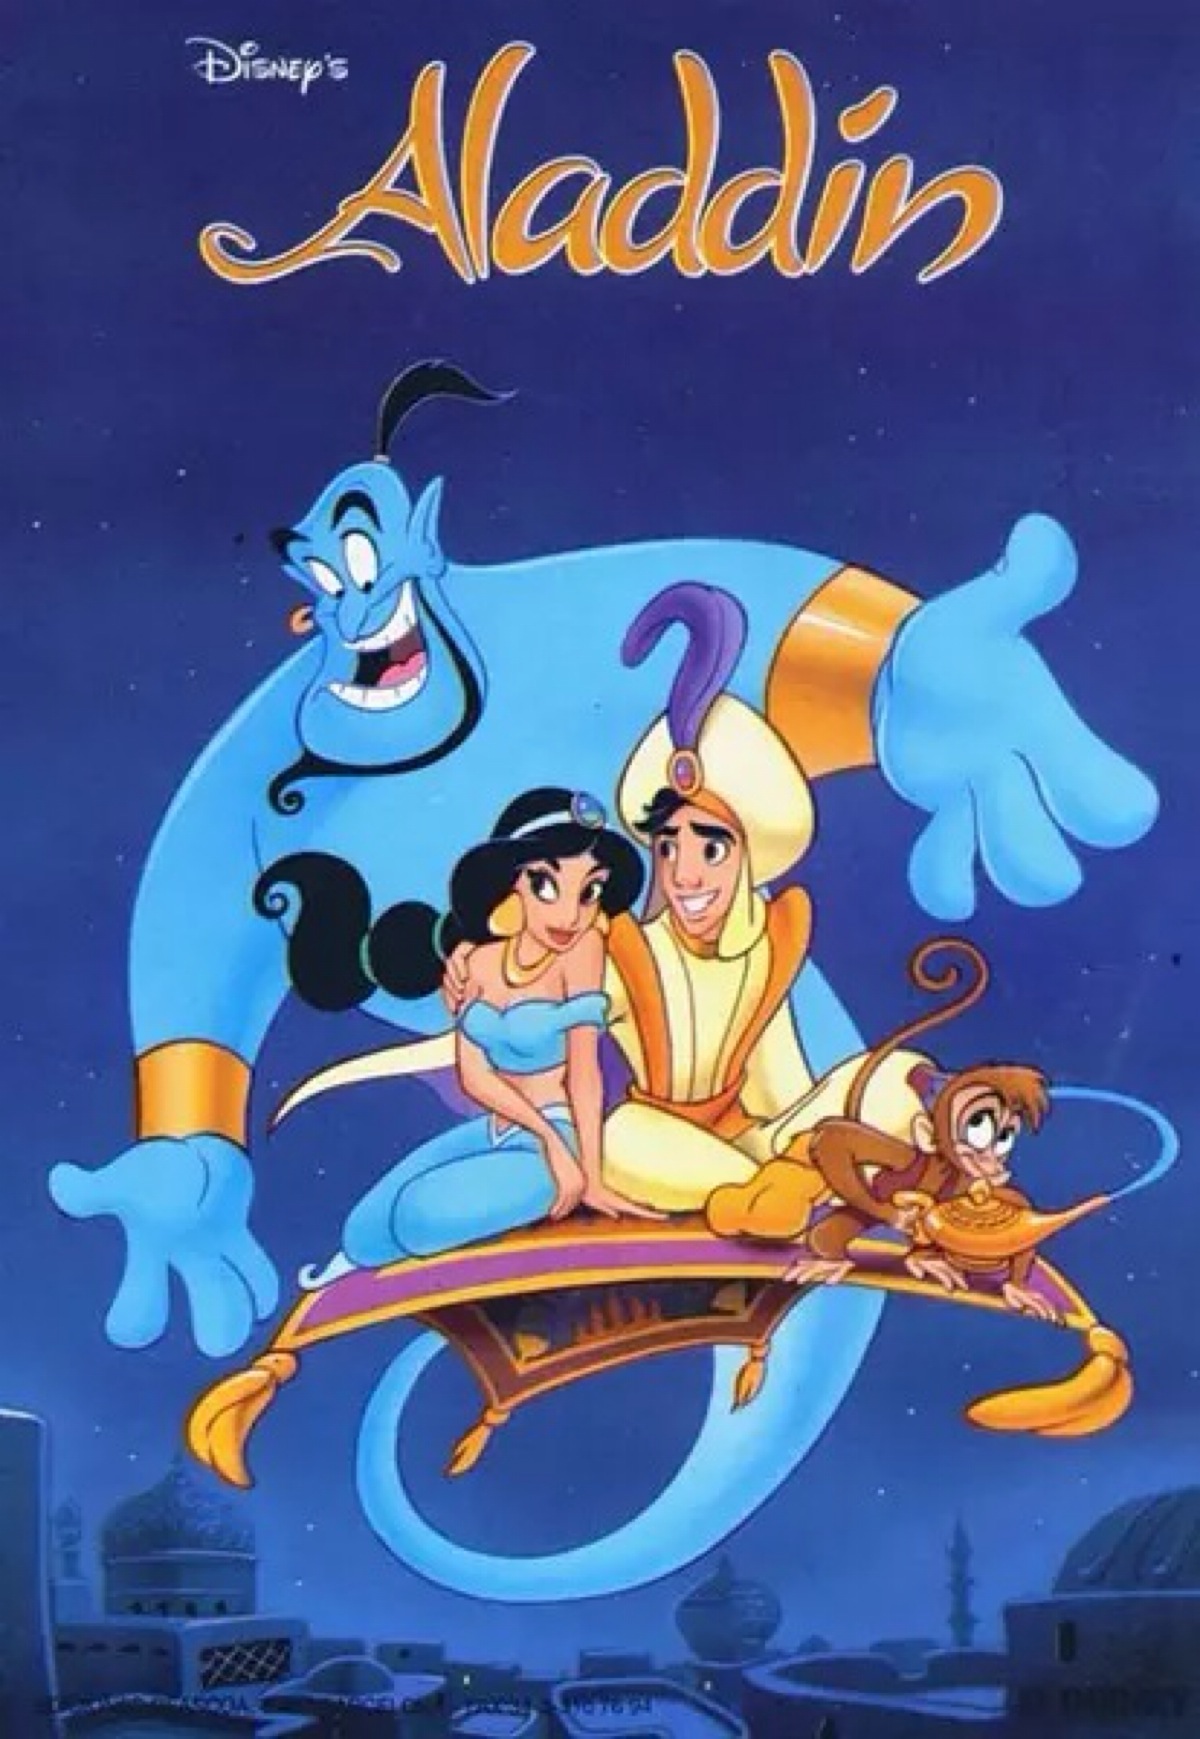 【美影】动画片《阿拉丁》 Aladdin (1992)将发布4K UHD蓝光影碟_电影